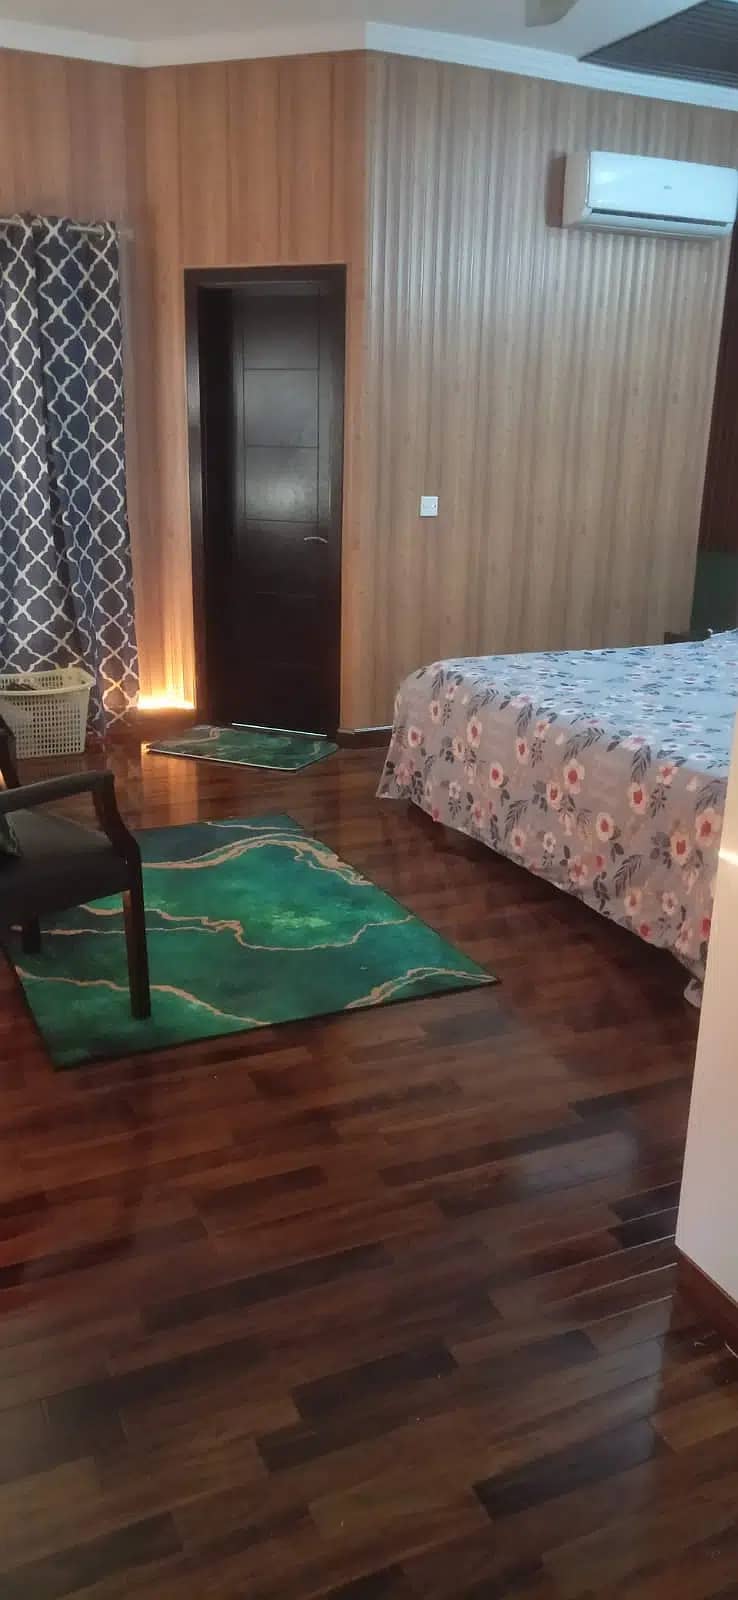 Water proof spc flooring, Wooden floor, Vinyl floor, wood floor Lahore 15